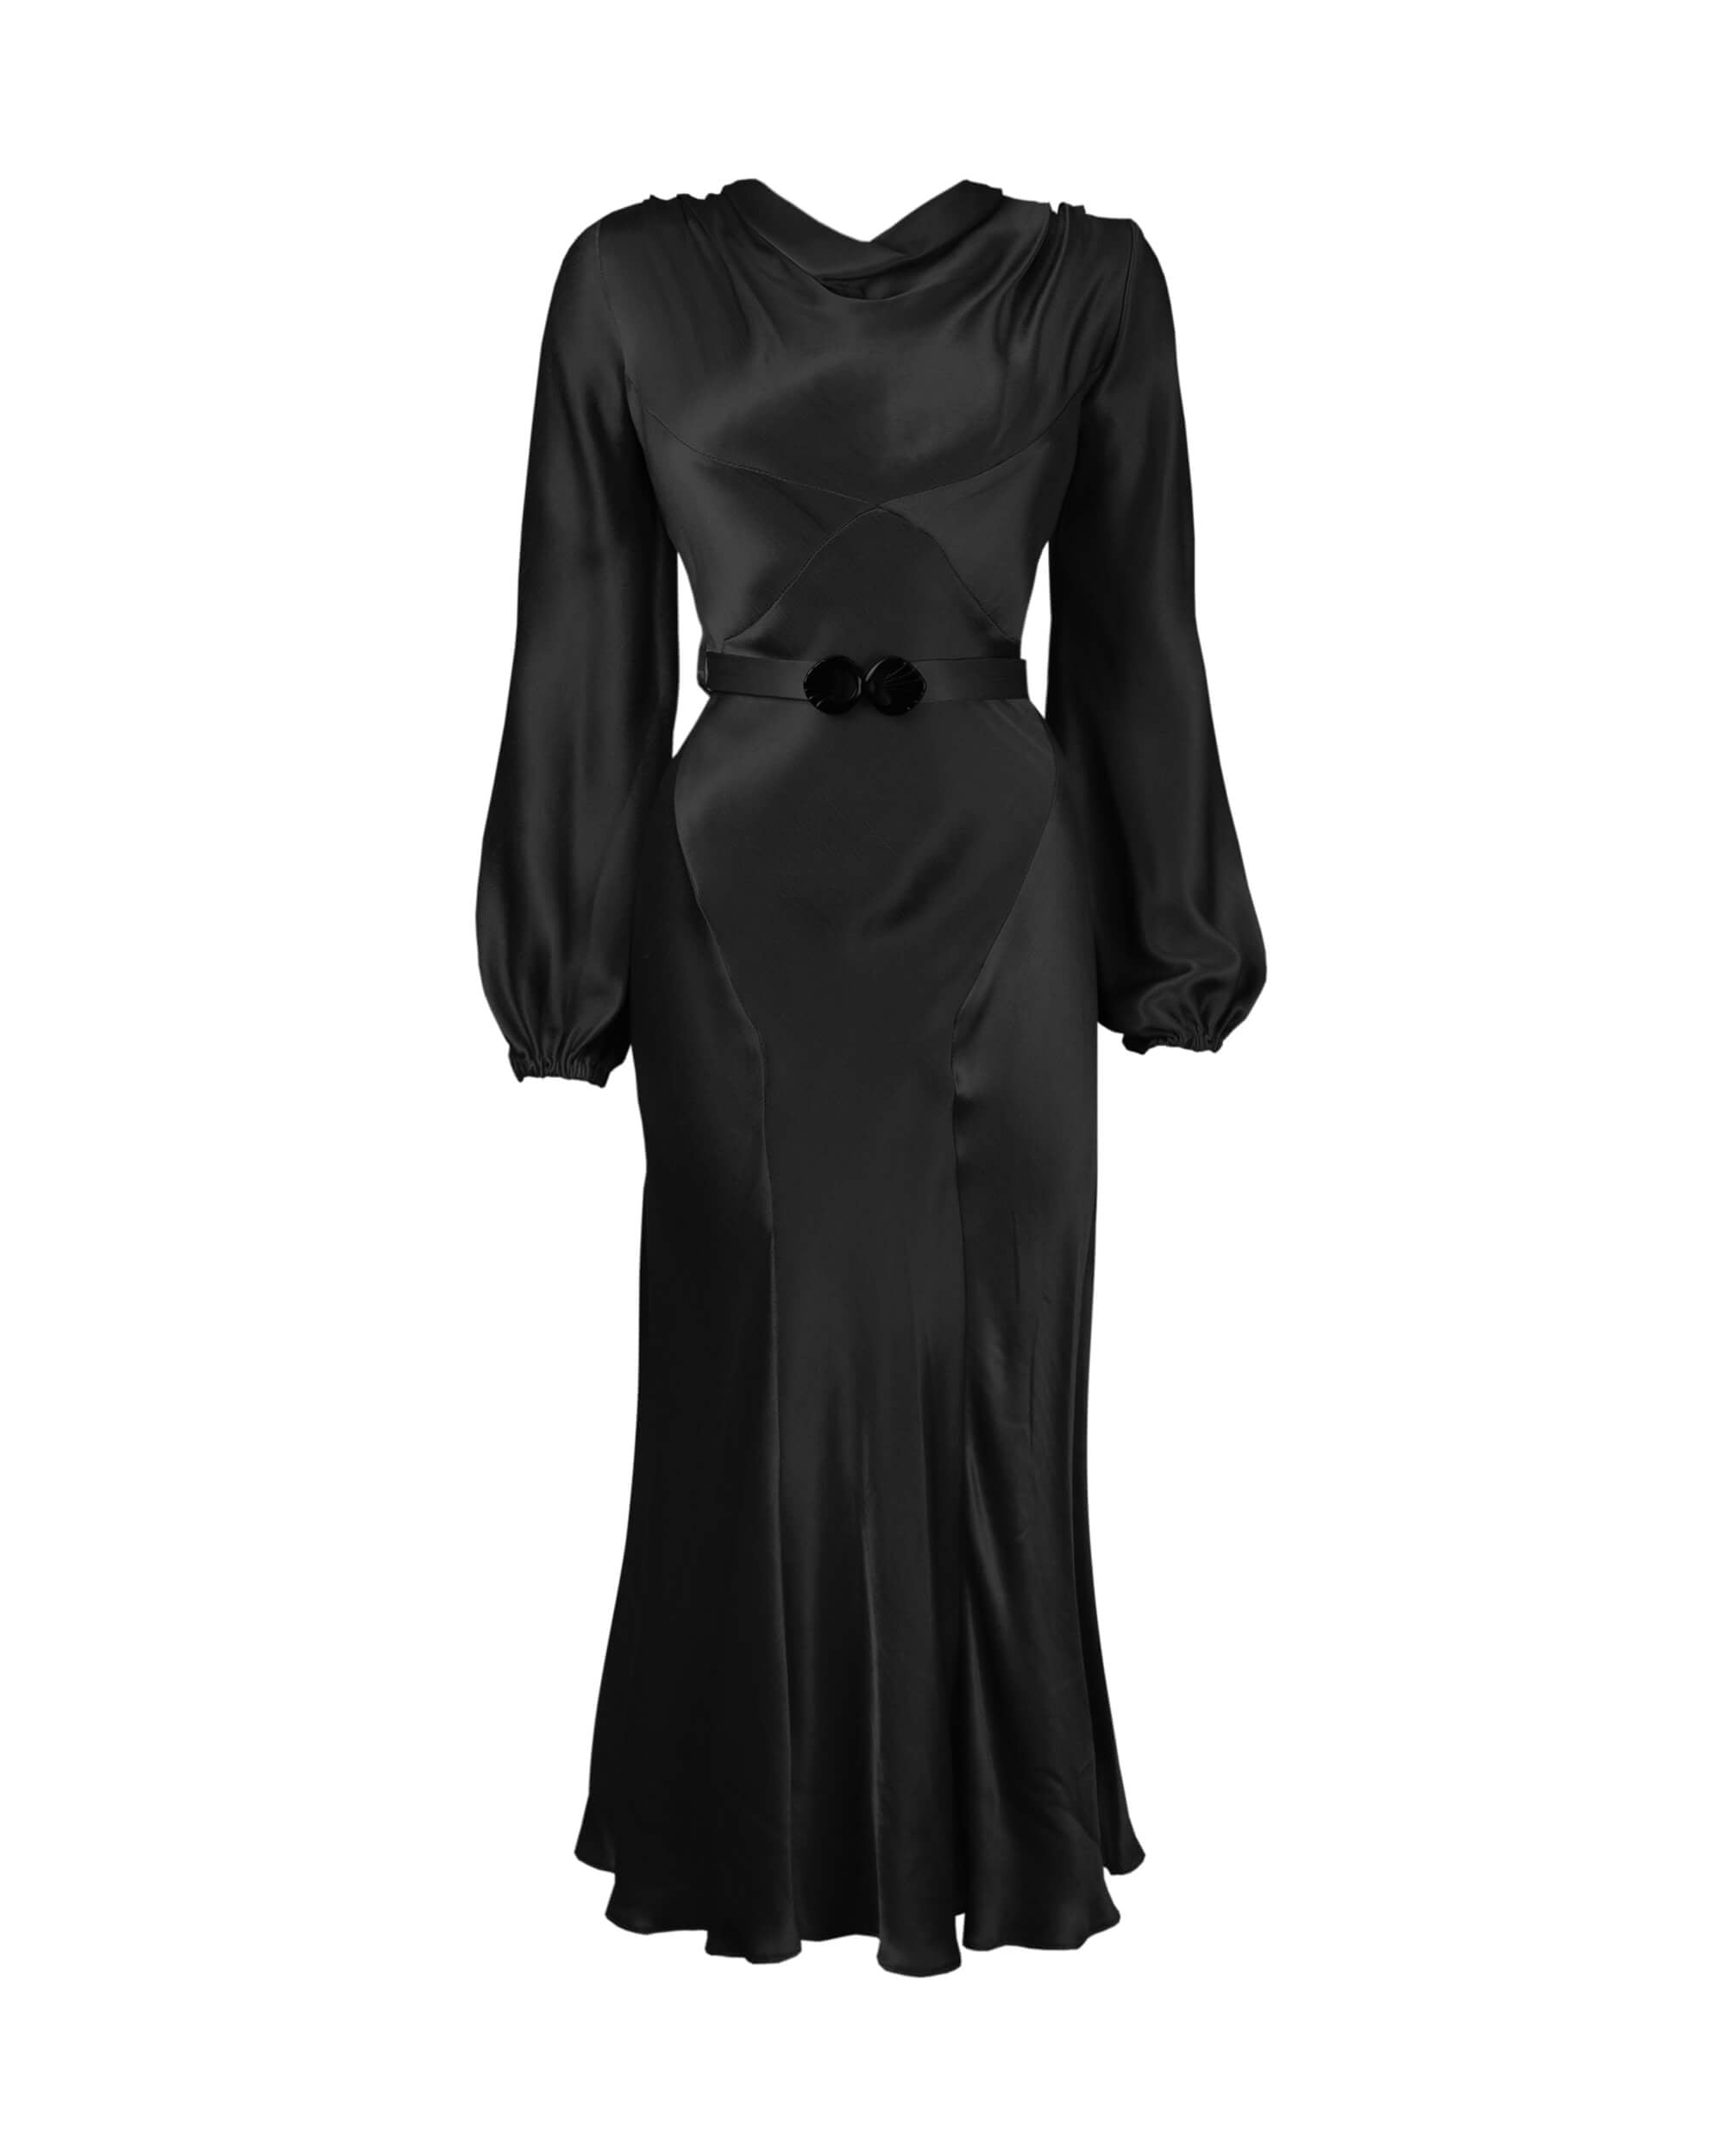 30s Joanie Bias Cut Dress - Ebony Satin